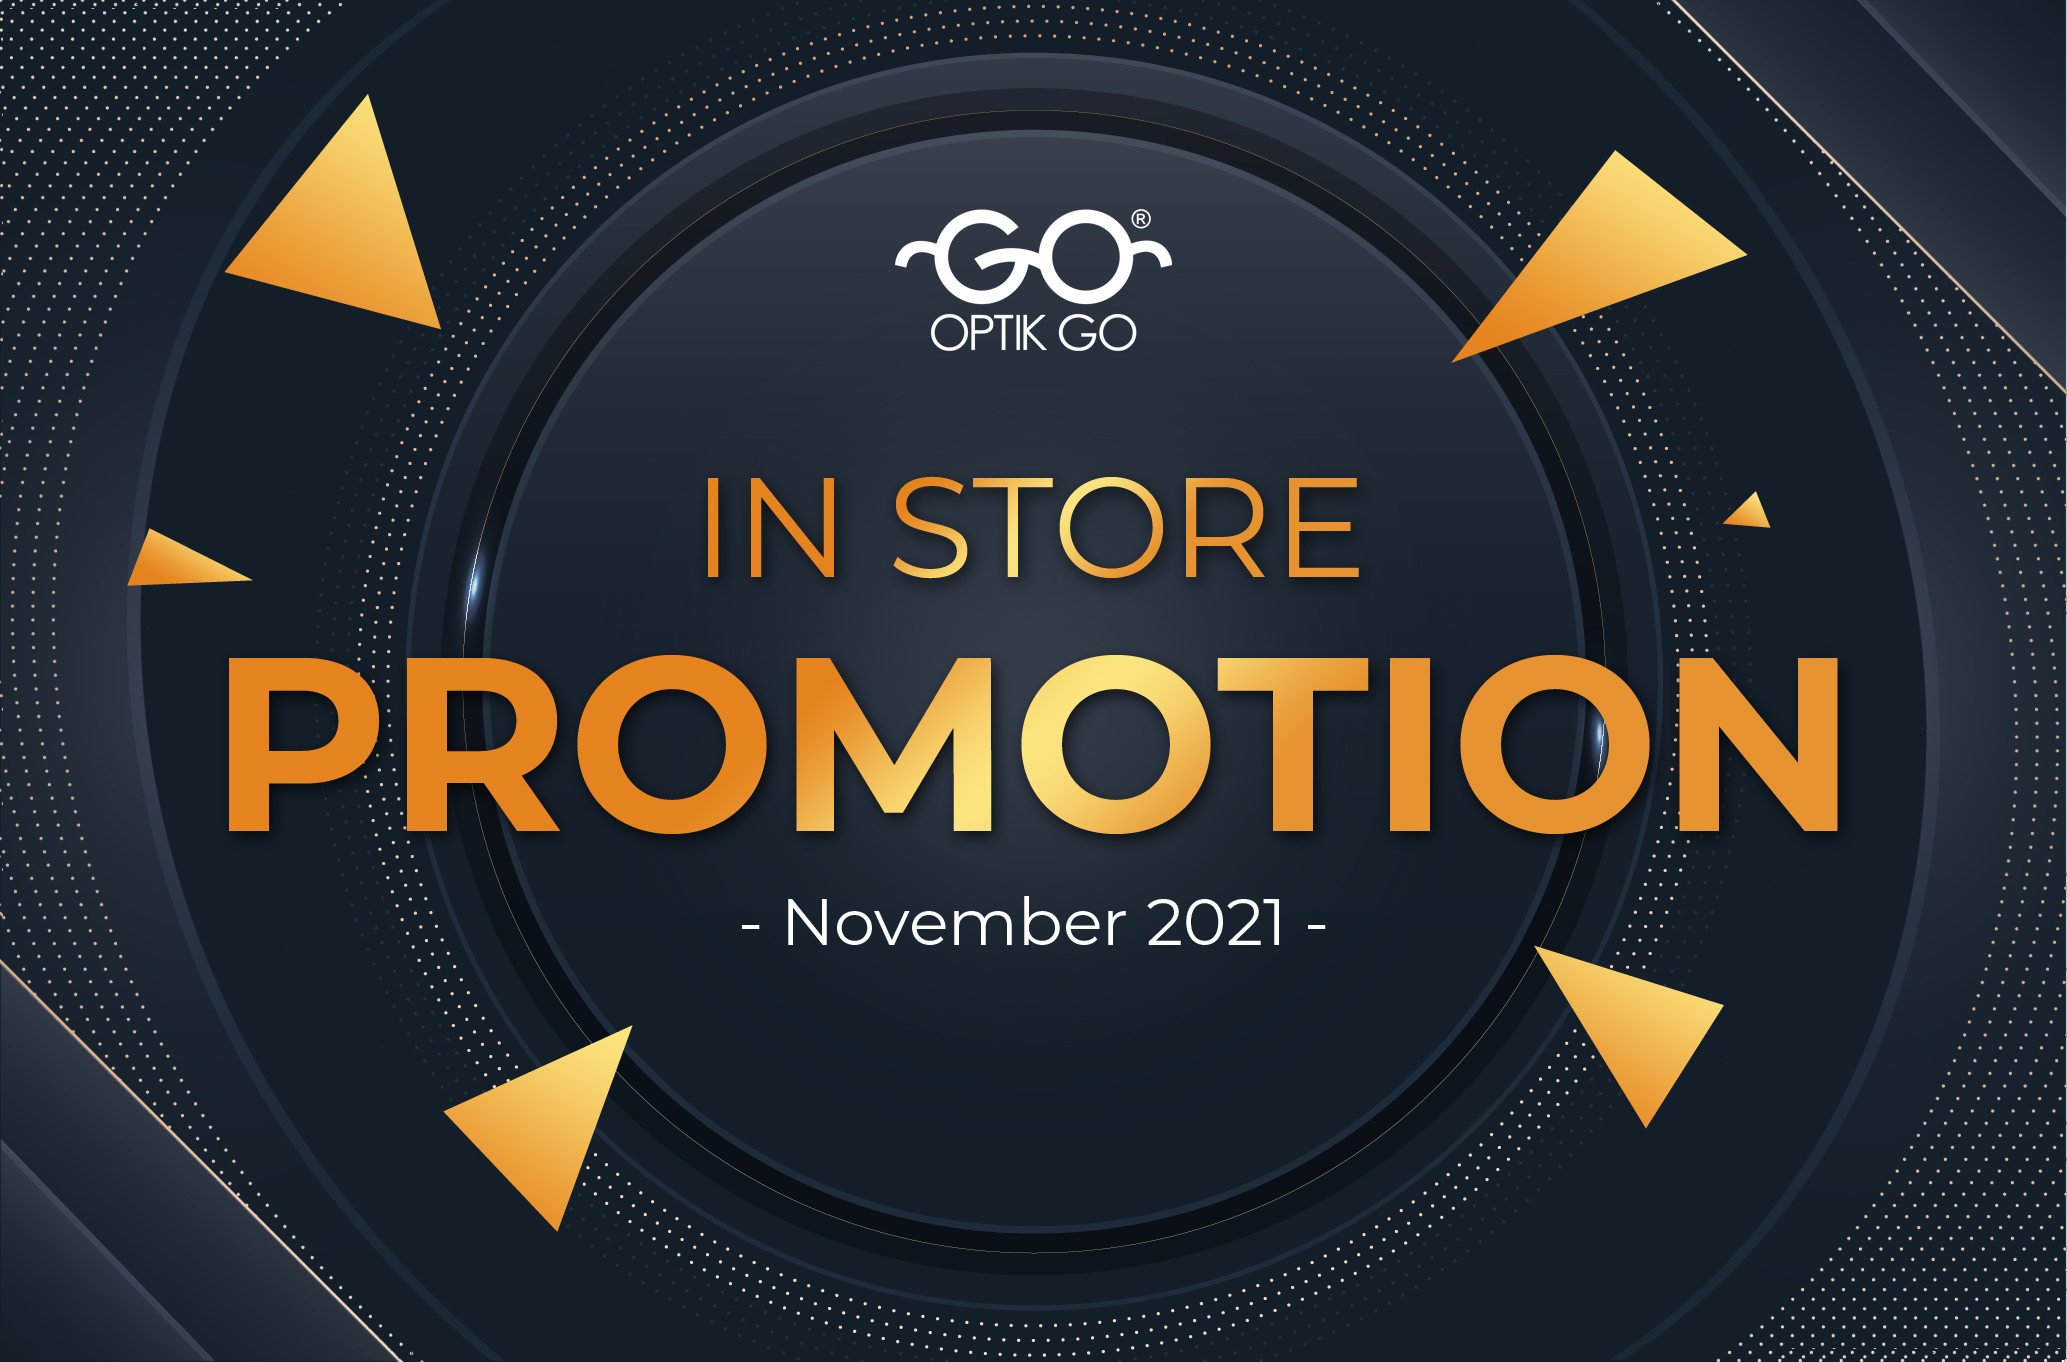 Instore Optik Go Promotion - November 2021